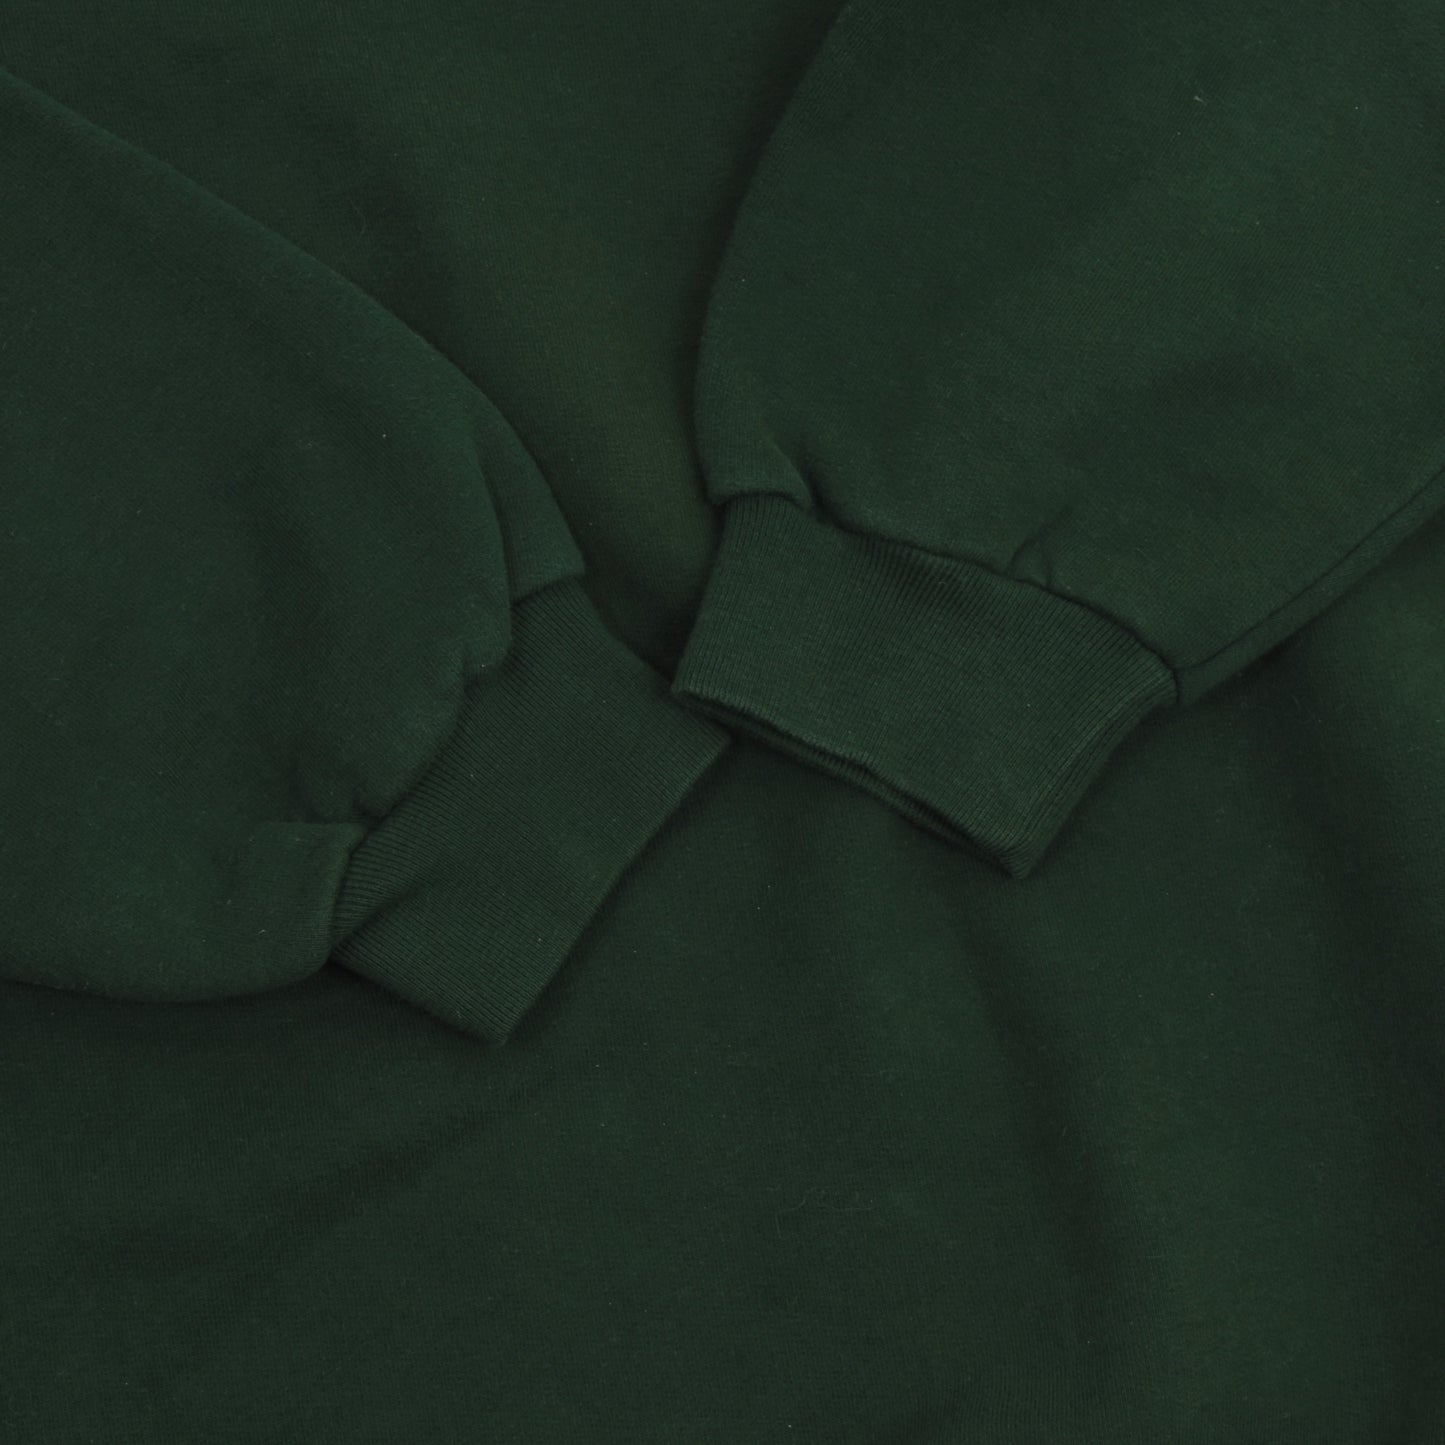 Vintage Barbour Sweatshirt Size UK48 - Green